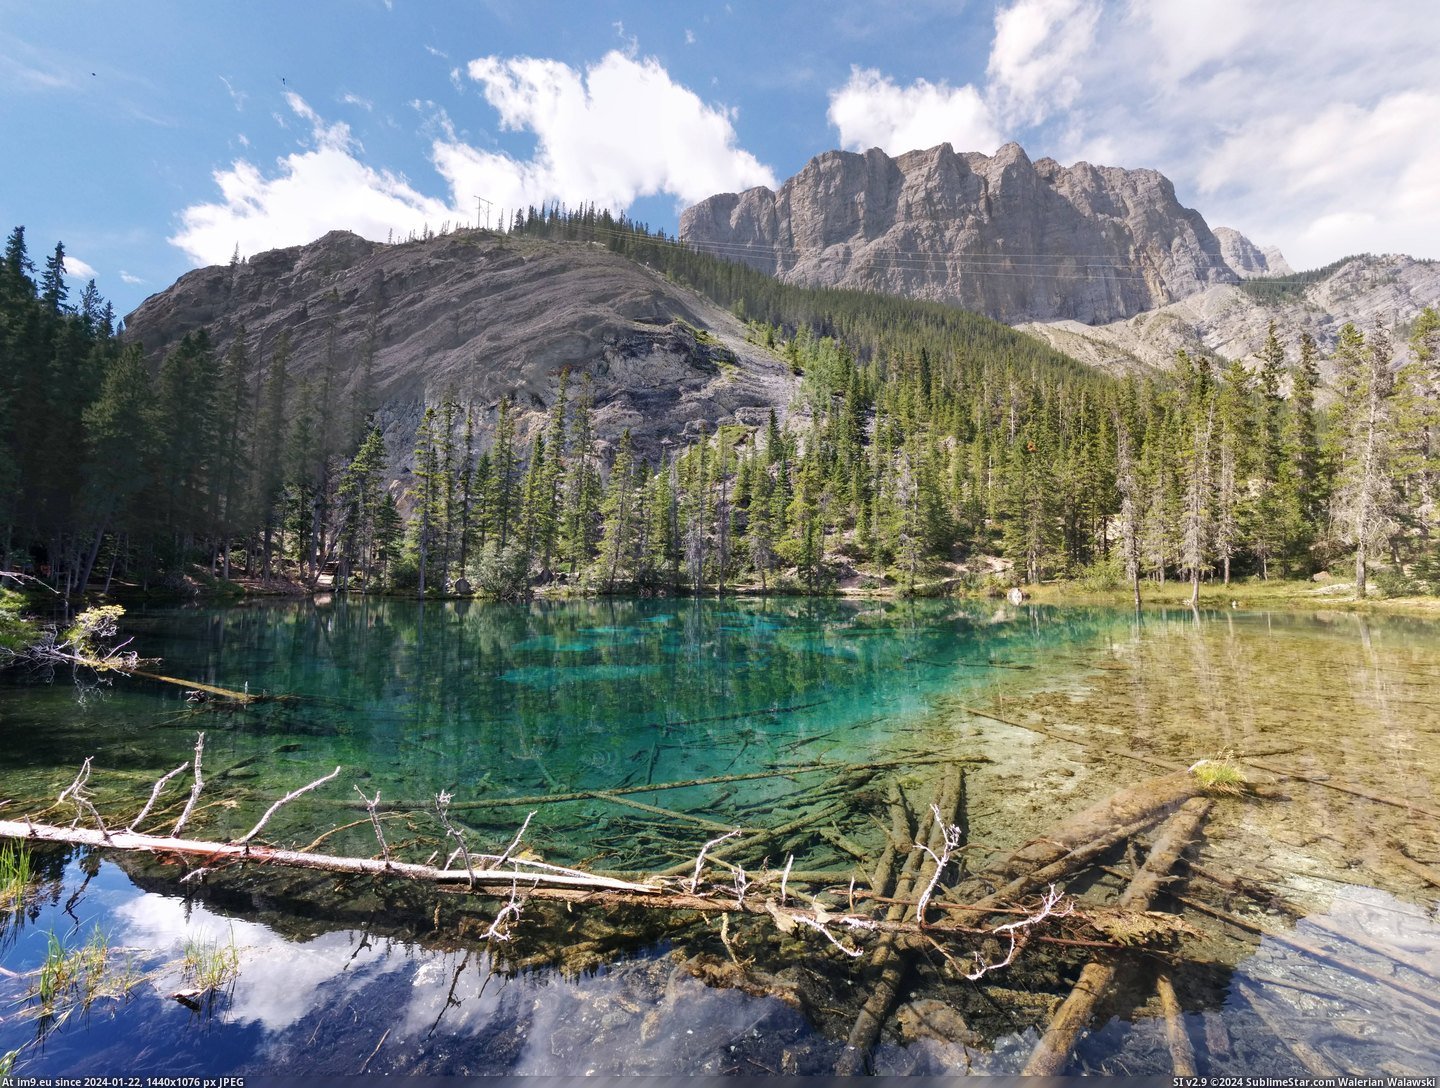 #Alberta #Grassi #Canmore #Lakes [Earthporn] Grassi Lakes, Canmore, Alberta [7098x5316][OC] Pic. (Bild von album My r/EARTHPORN favs))